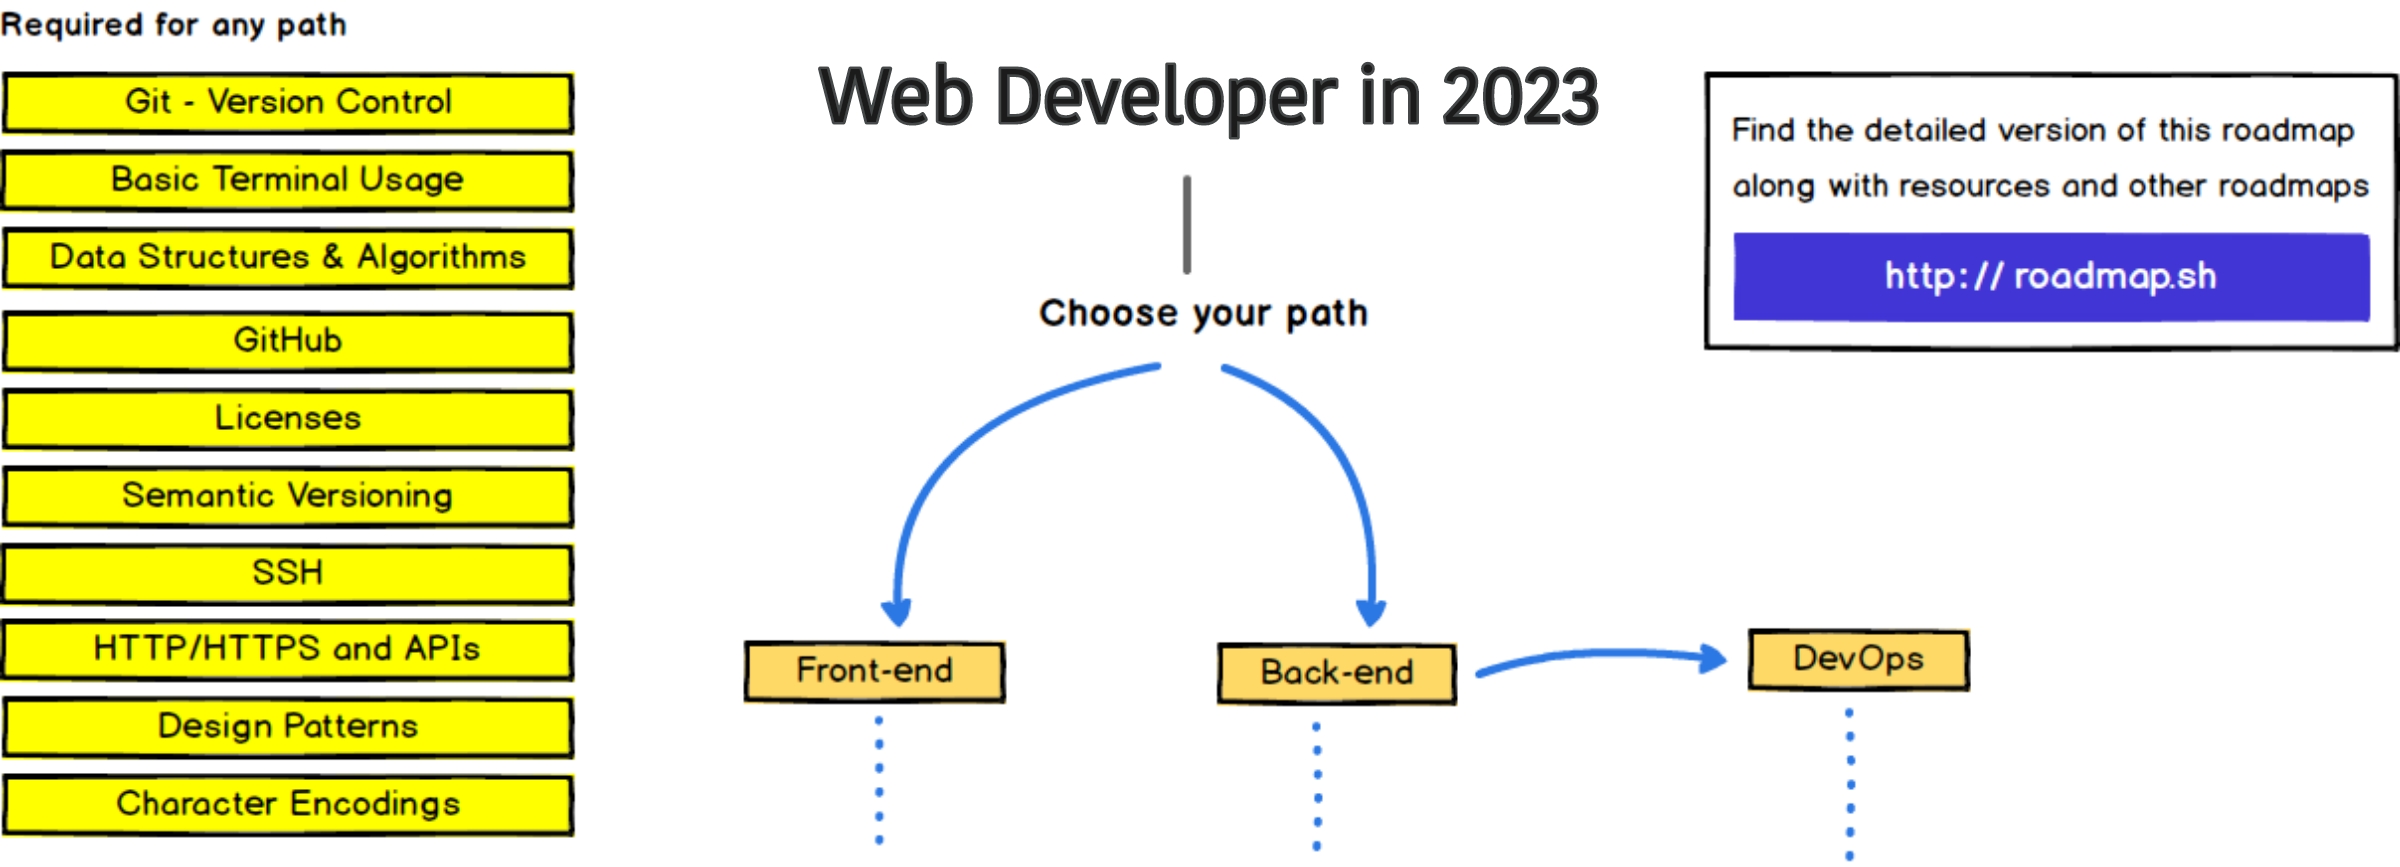 web developer roadmap 